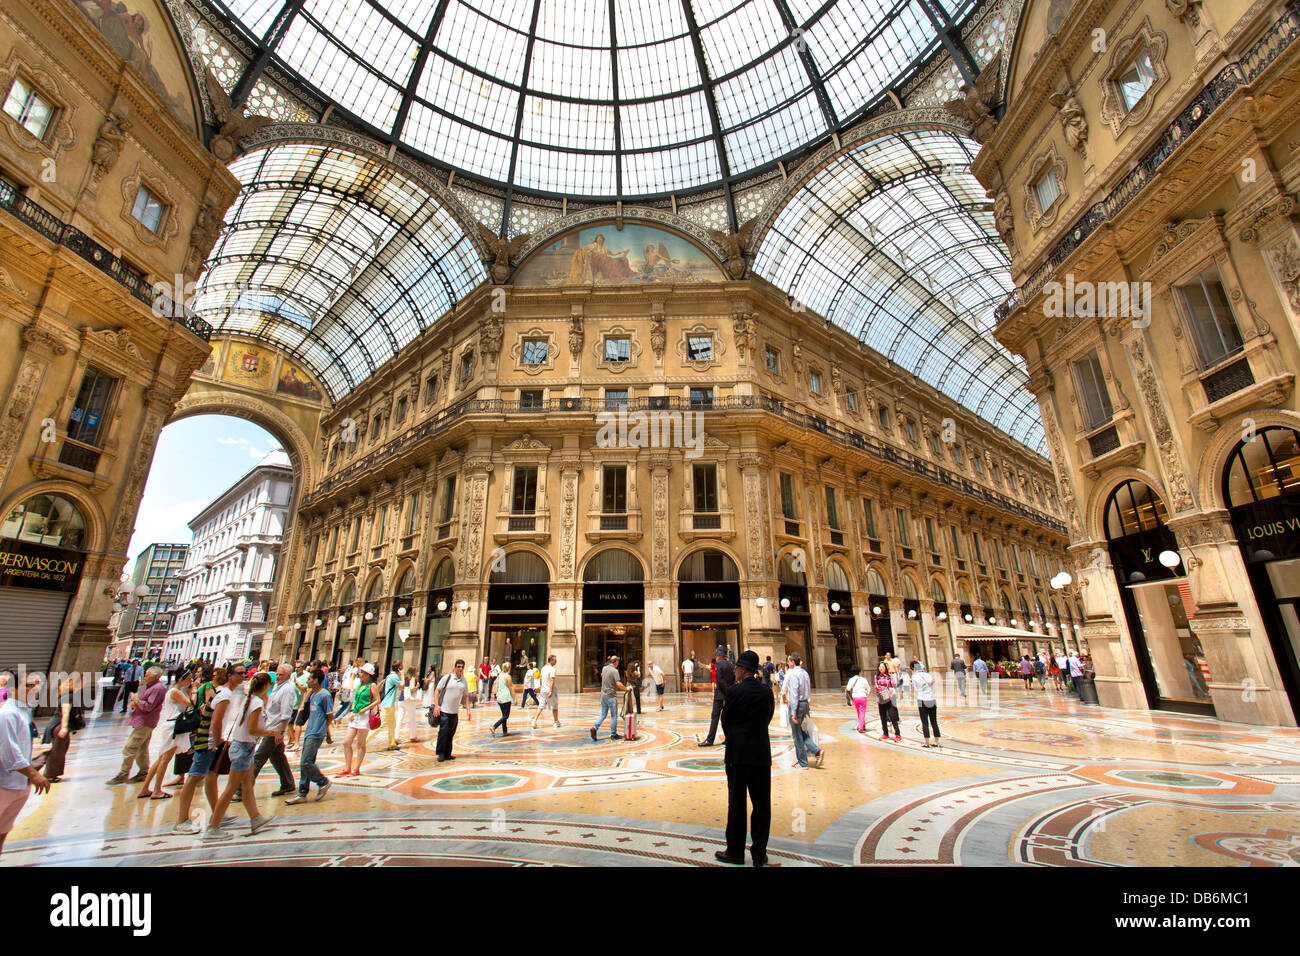 Le principal centre commercial 'Galerie Vittorio Emanuele 11' à Milan, Italie. Banque D'Images